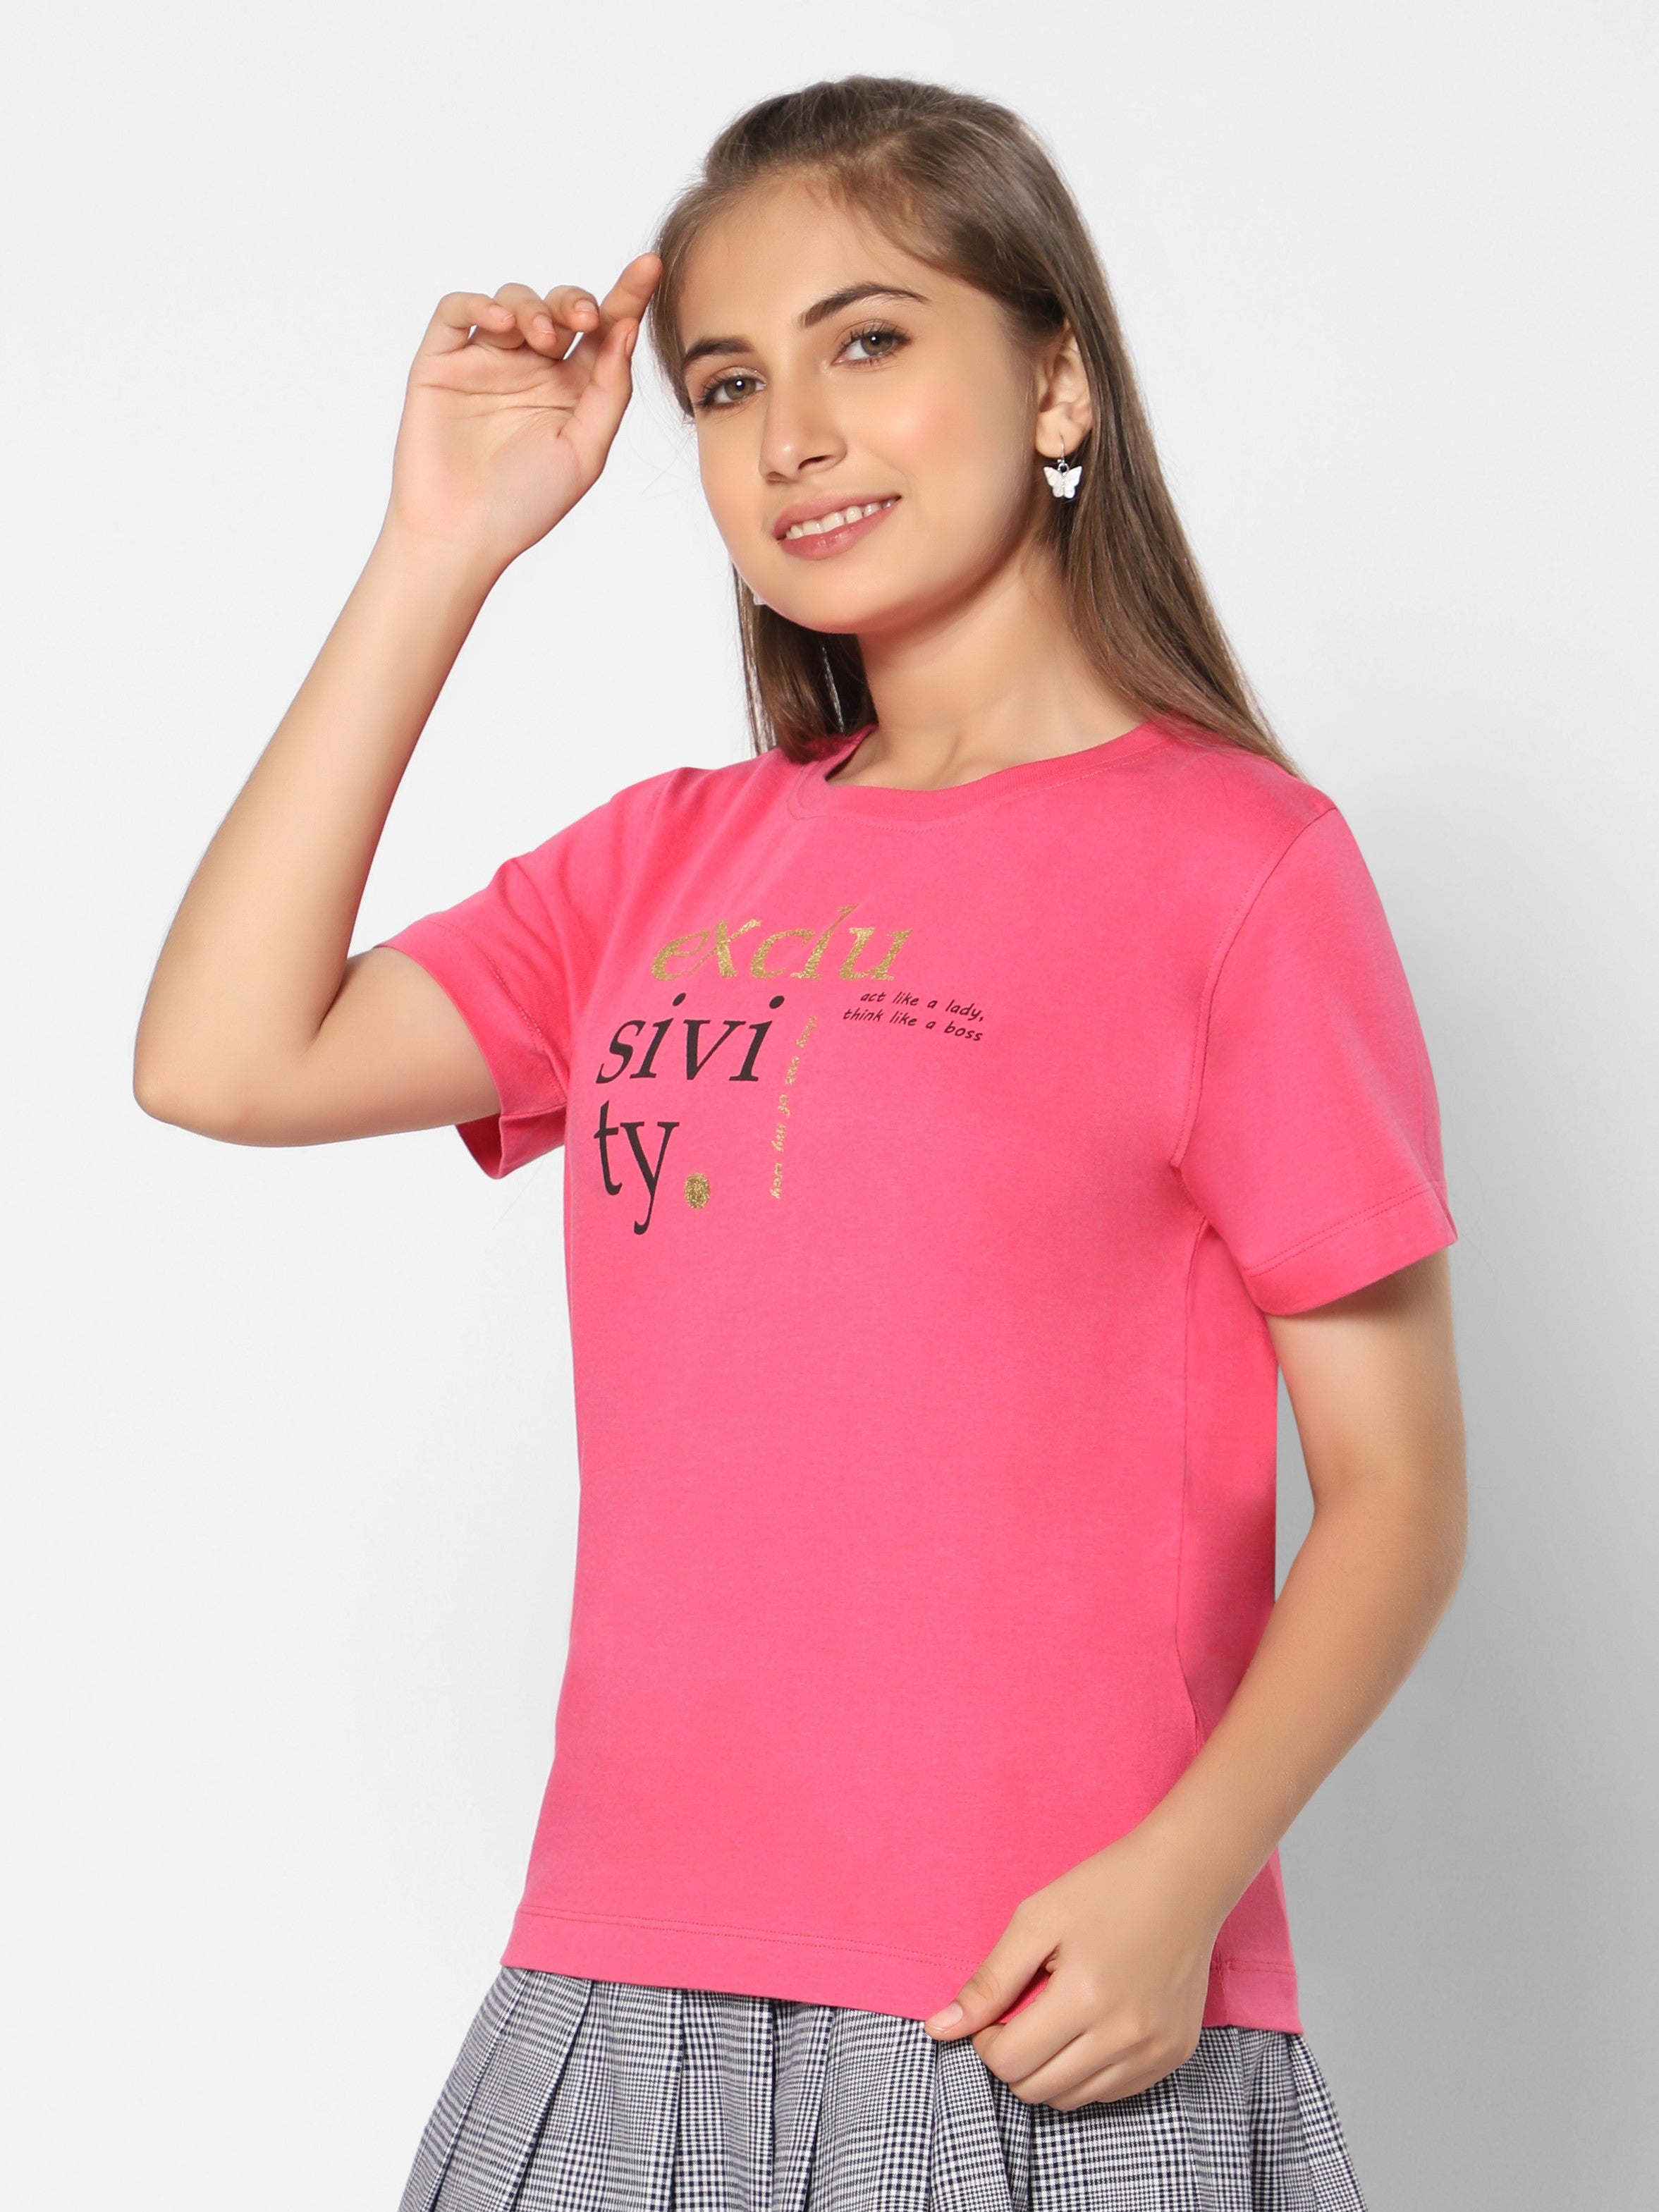 TeenTrums Pack of 3 - Girls Graphic Print Tee 100% Cotton T-Shirt Round Neck Half Sleeves-  Dark Pink / Dark Blue/ Pink